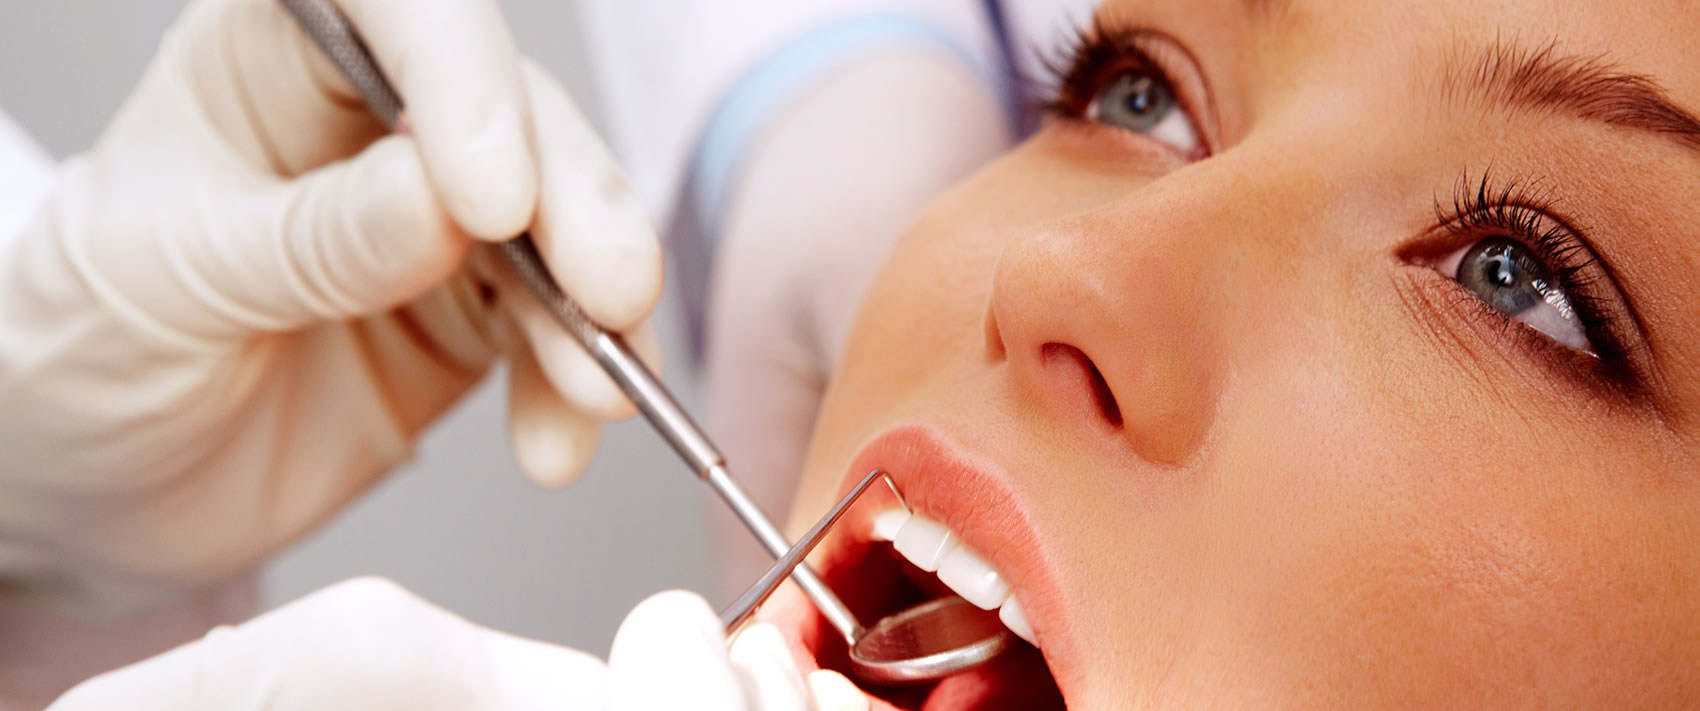 Лечение зубов в клинике Аснан дент